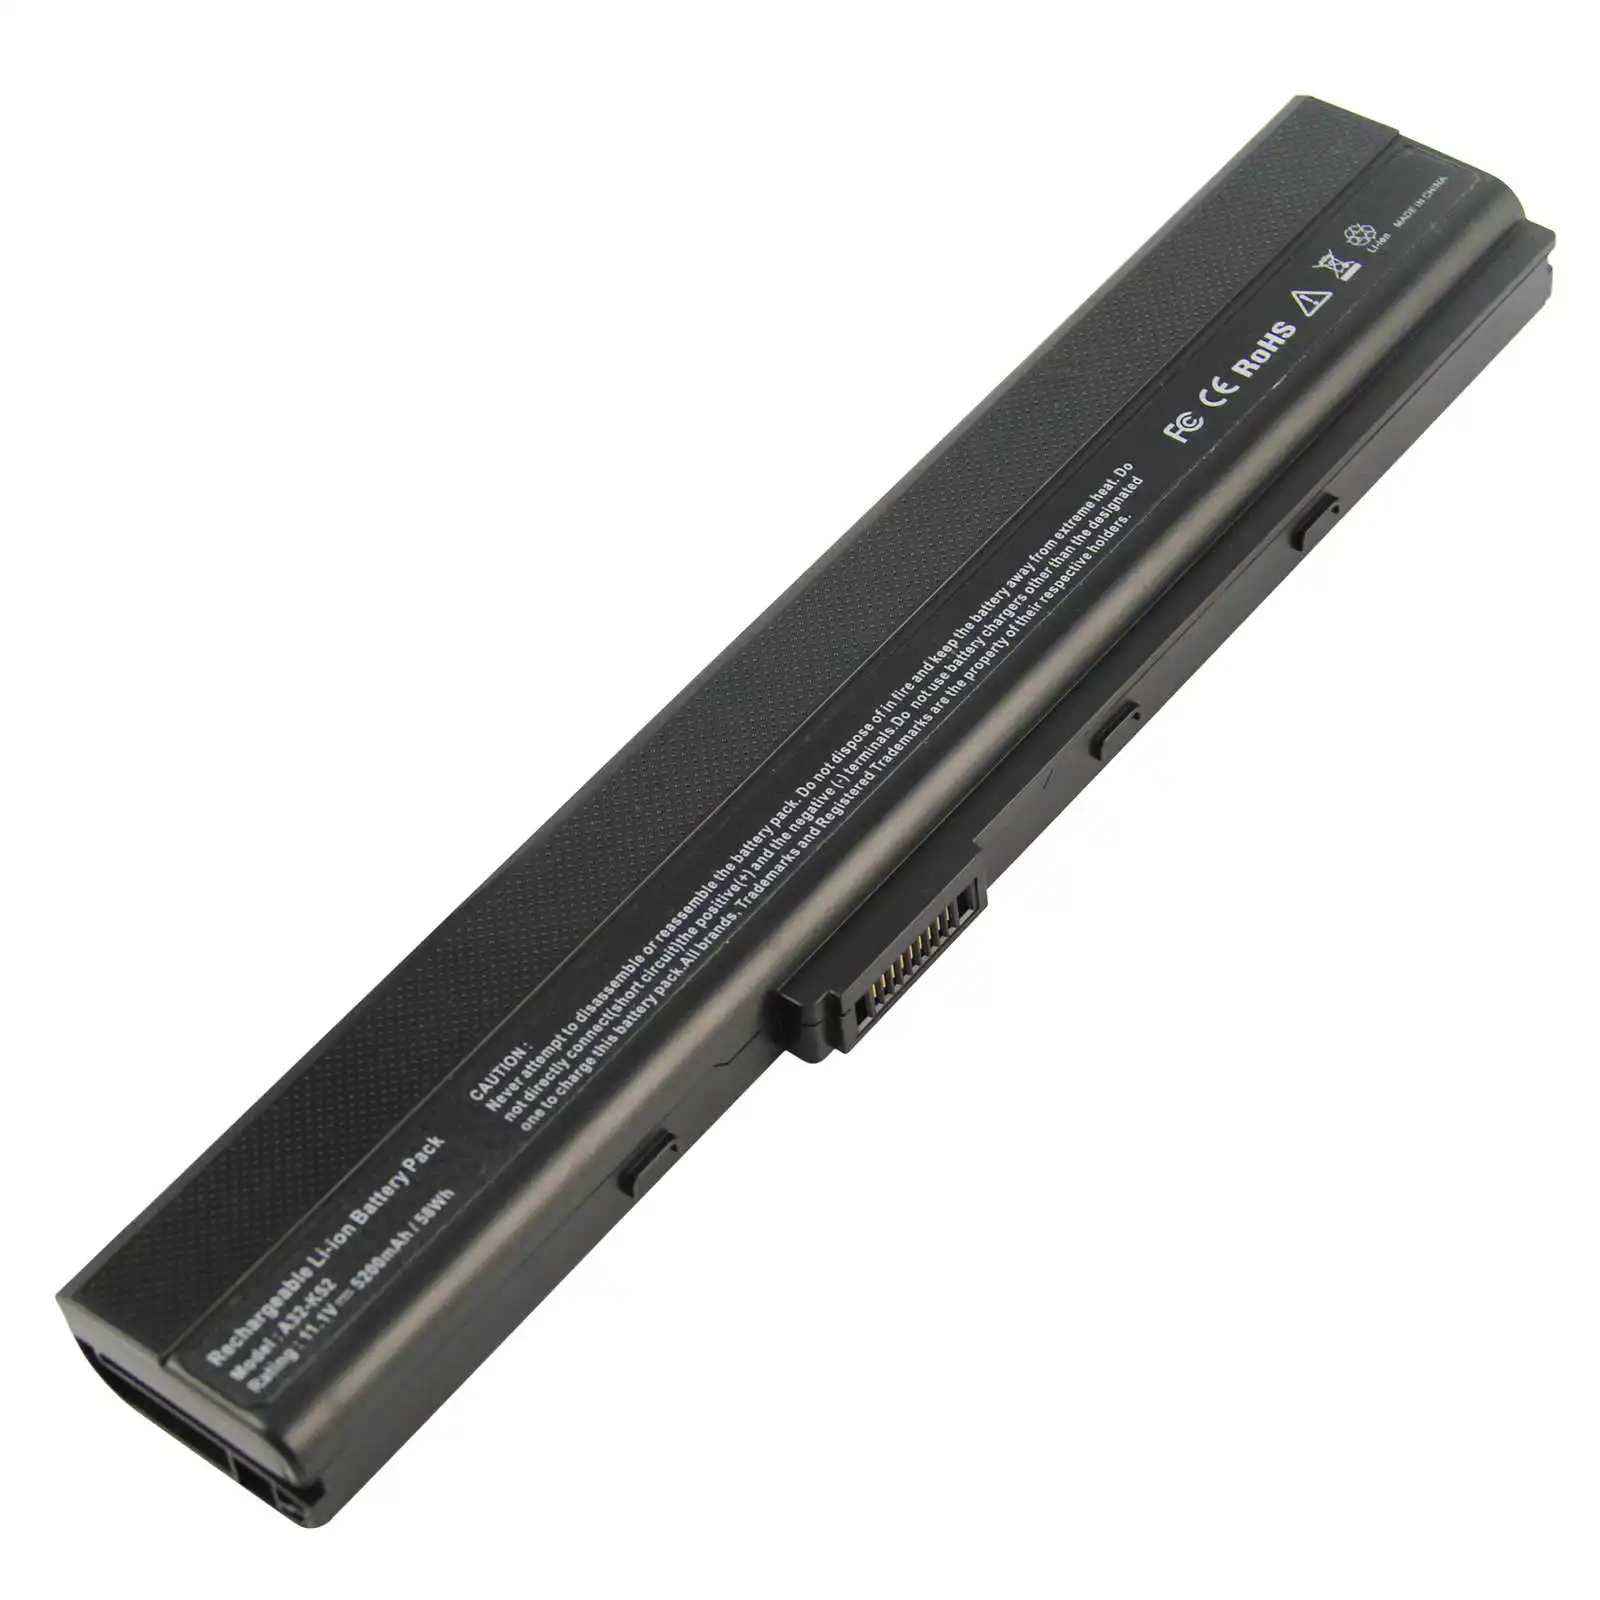 11.1V 5200mah Laptop Battery for Asus A32-K52 A31-K52 A41-K52 A42-K52 A52 K42F K42JB K52 Rechargeable Batteries Standard Battery